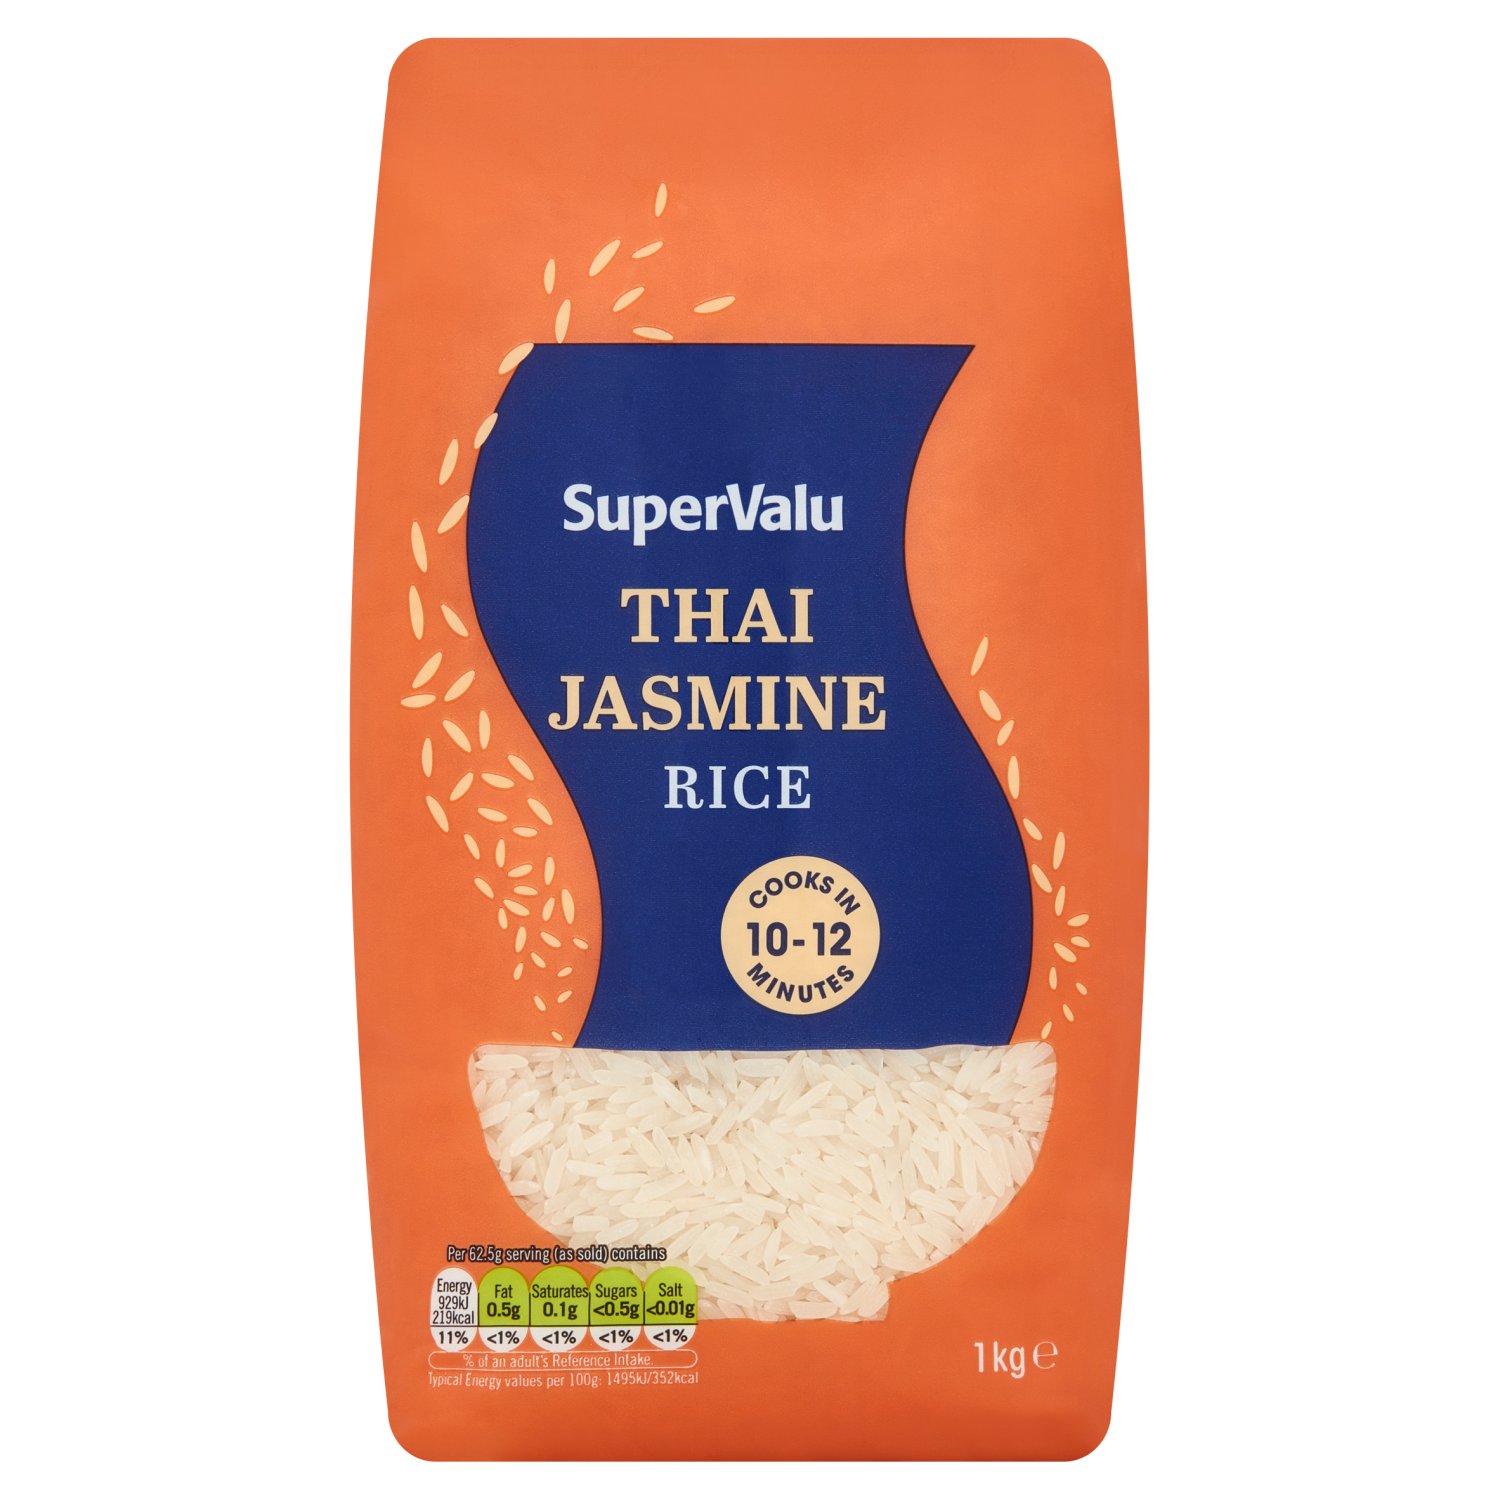 SuperValu Thai Jasmine Premium Long Grain Rice (1 kg)